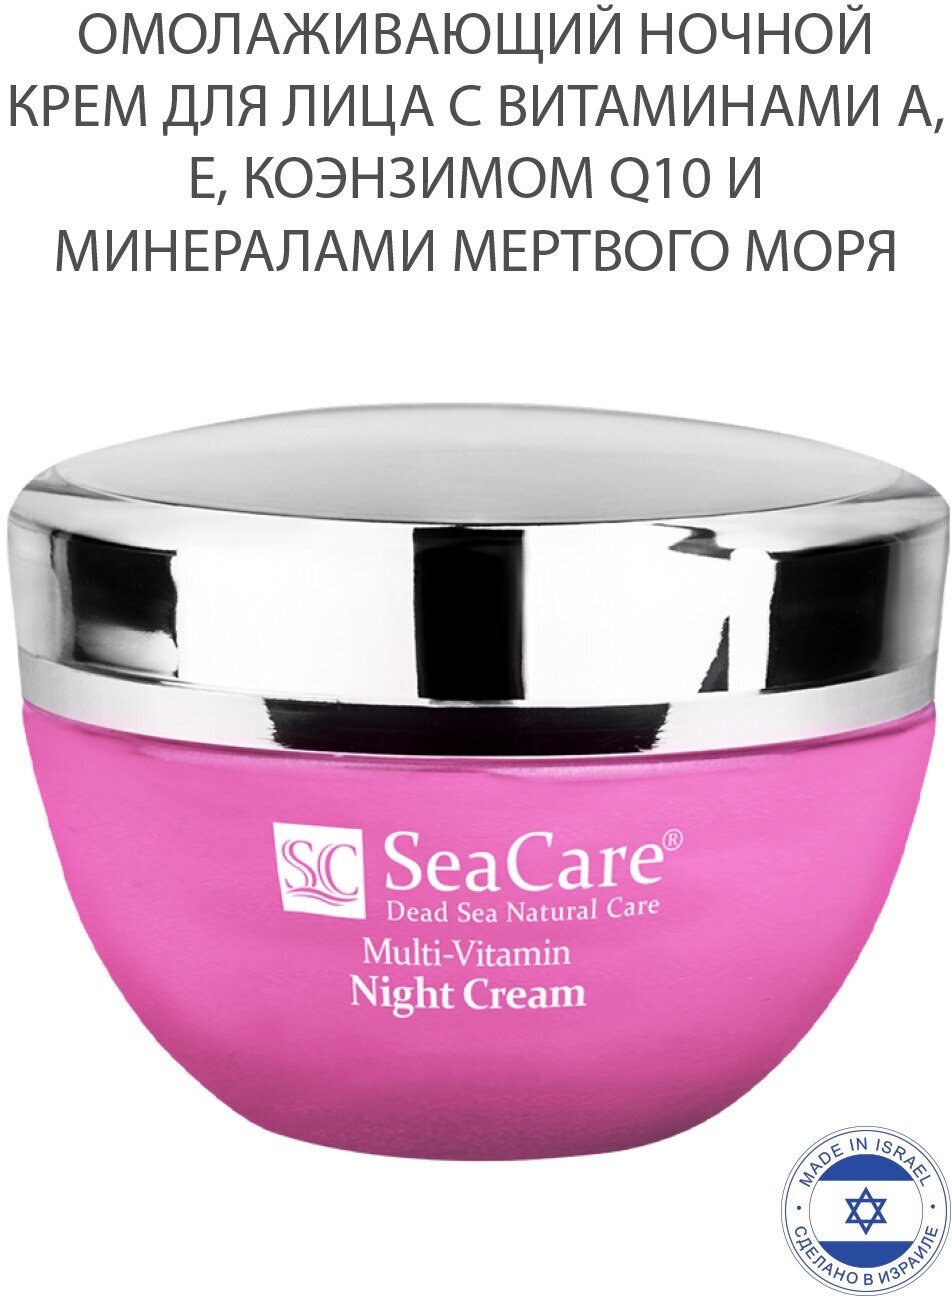 SeaCare Омолаживающий ночной крем для лица с витаминами А, Е, Коэнзимом Q10 и минералами Мертвого моря, 50мл.